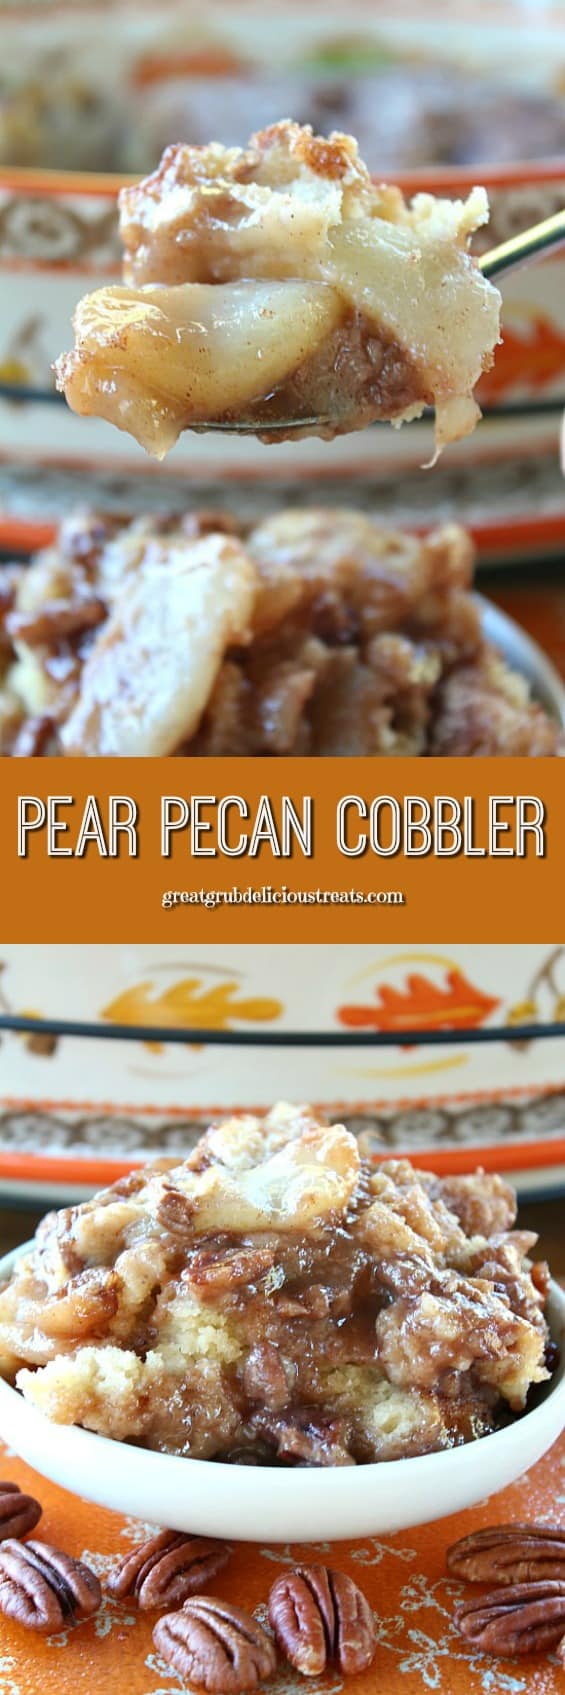 Pear Pecan Cobbler